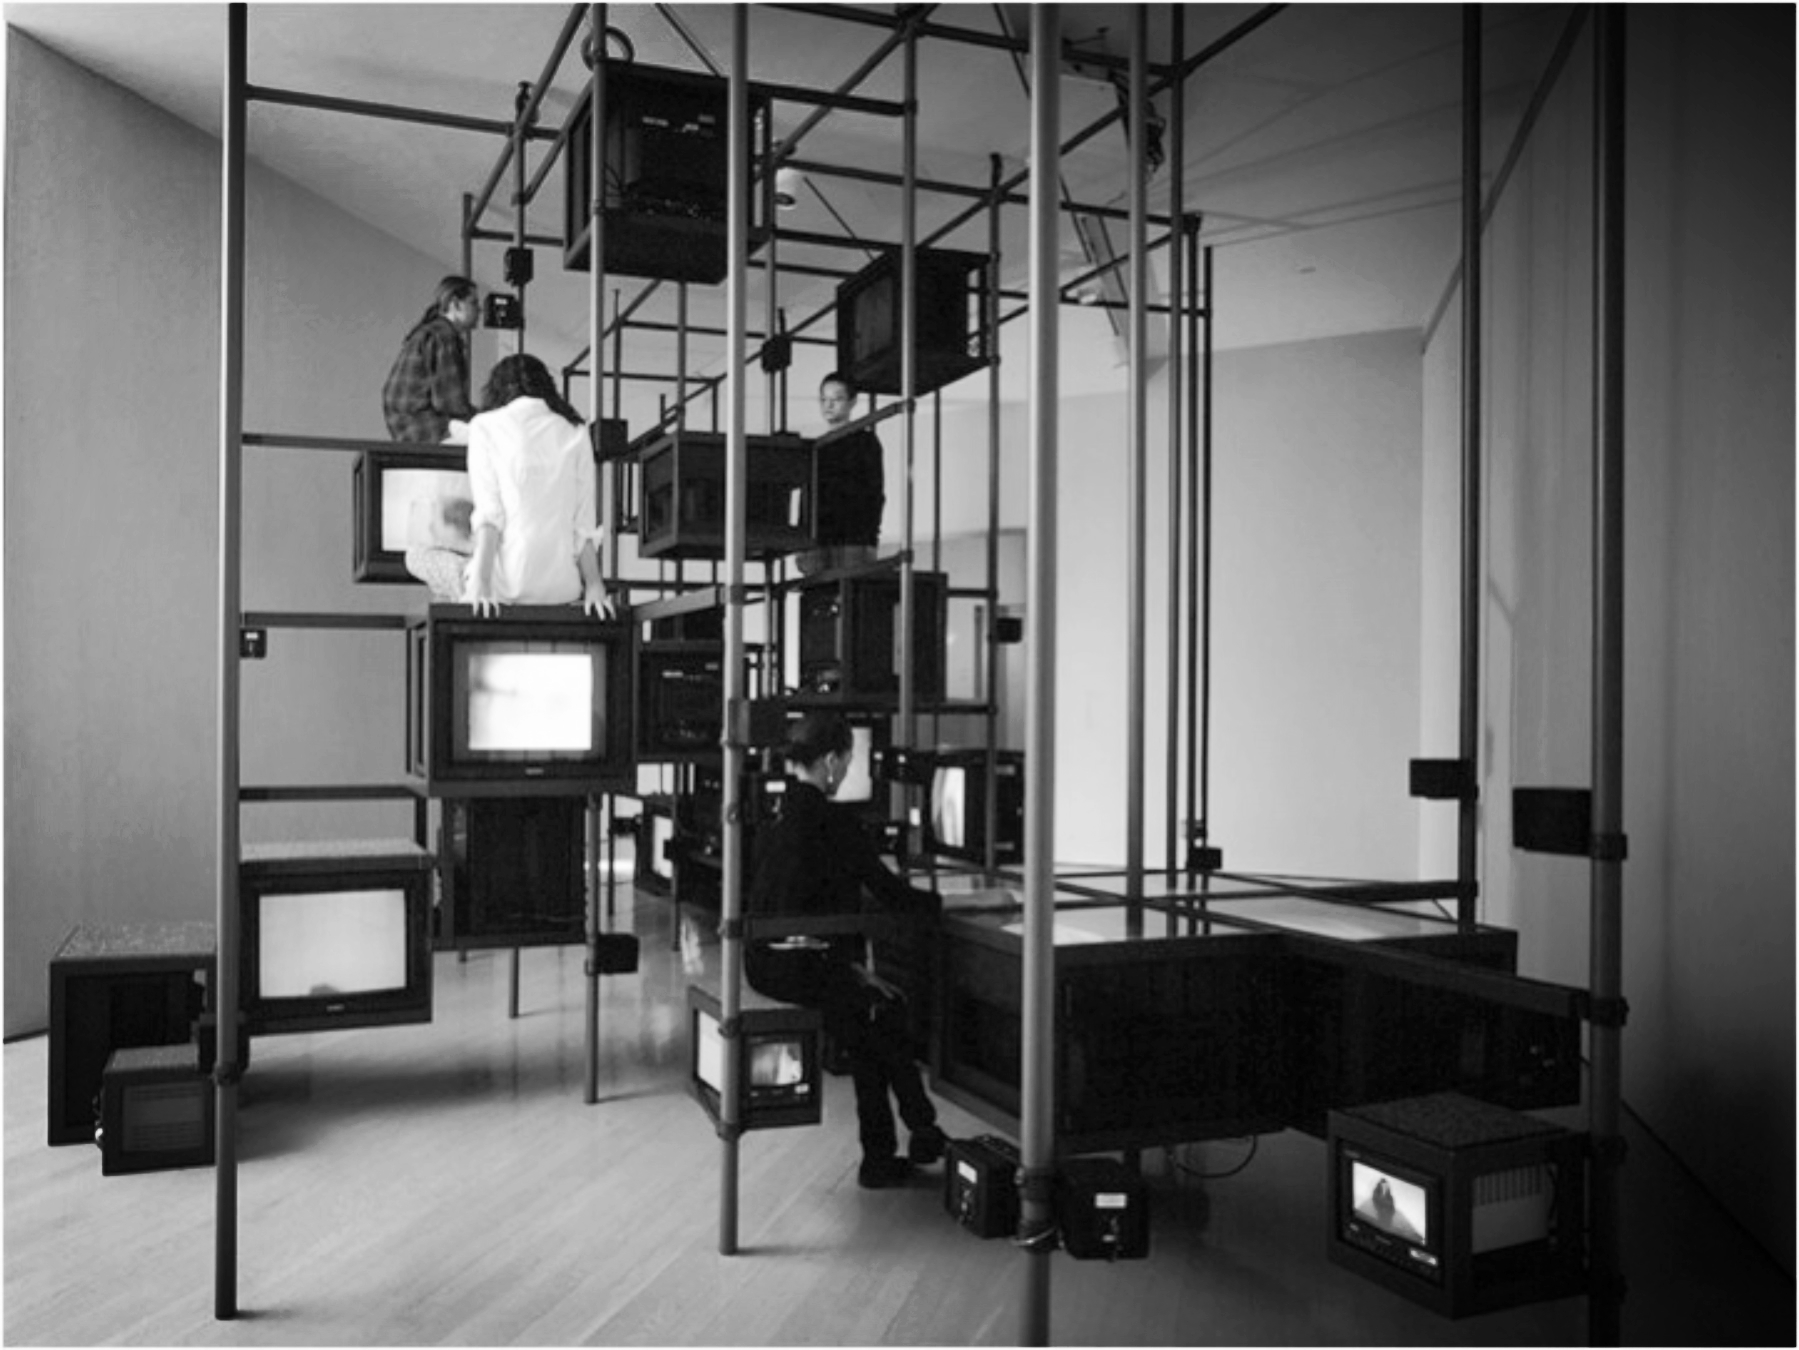 Guggenheim Museum Soho – New York 1990-1992 (Arata Isozaki)